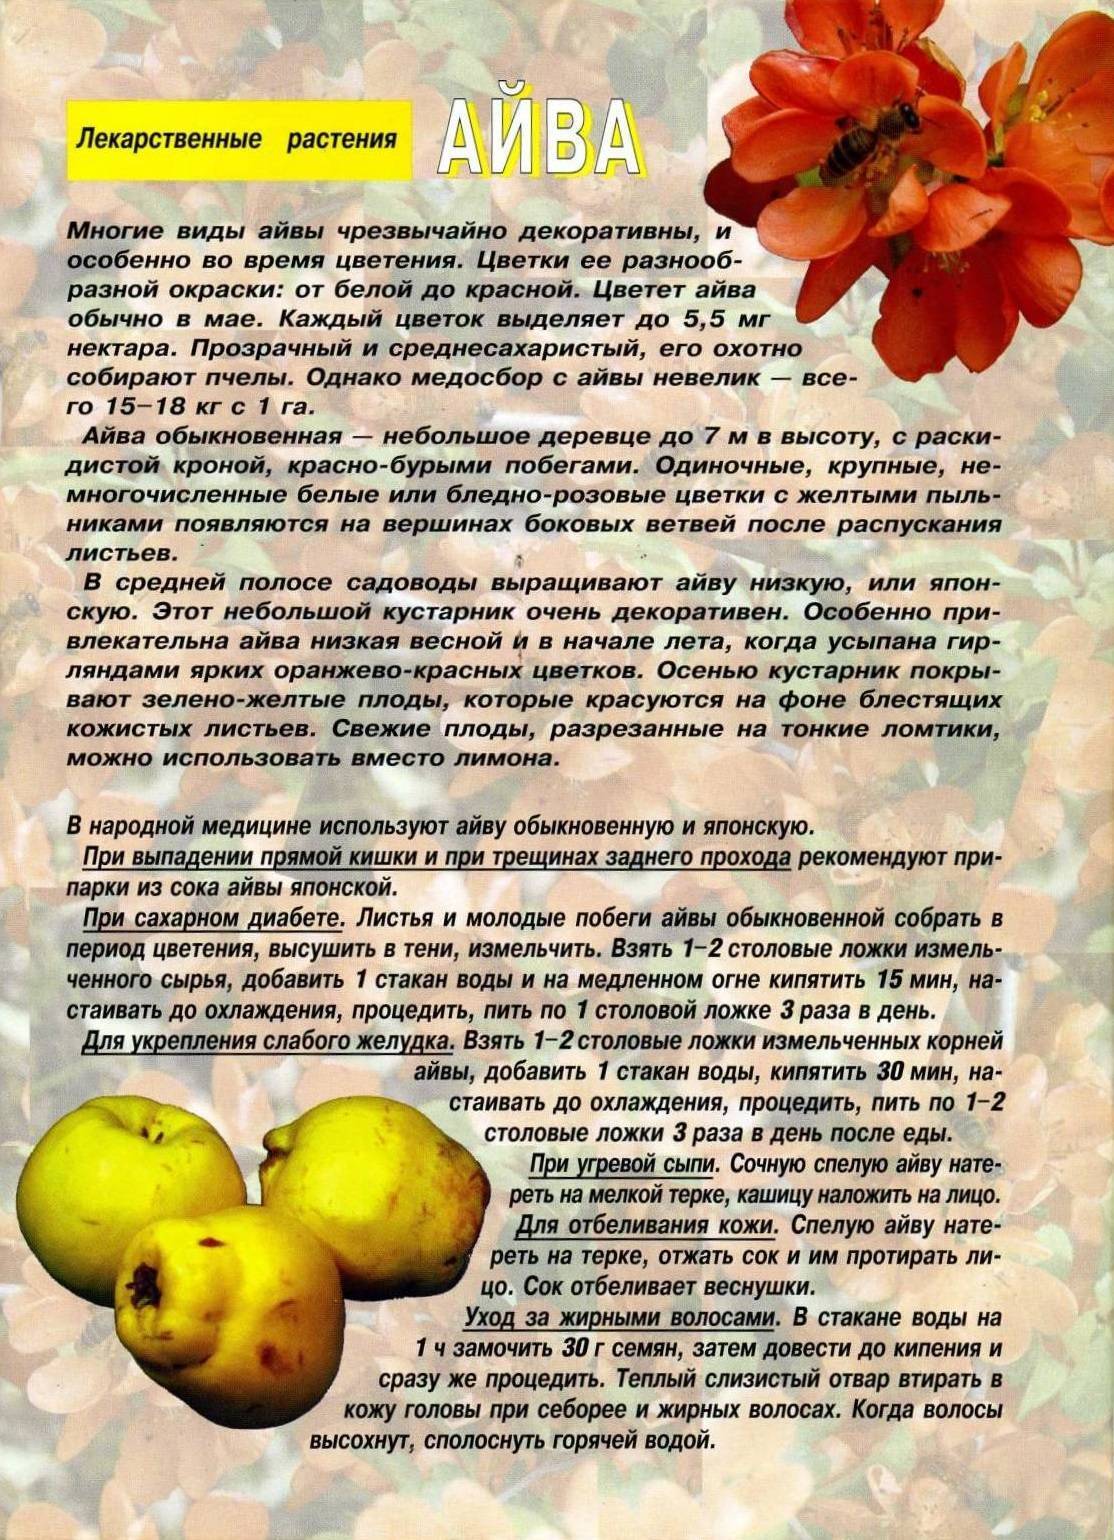 Айва – полезные свойства и противопоказания для здоровья, химический состав плодов и семян, способы приготовления